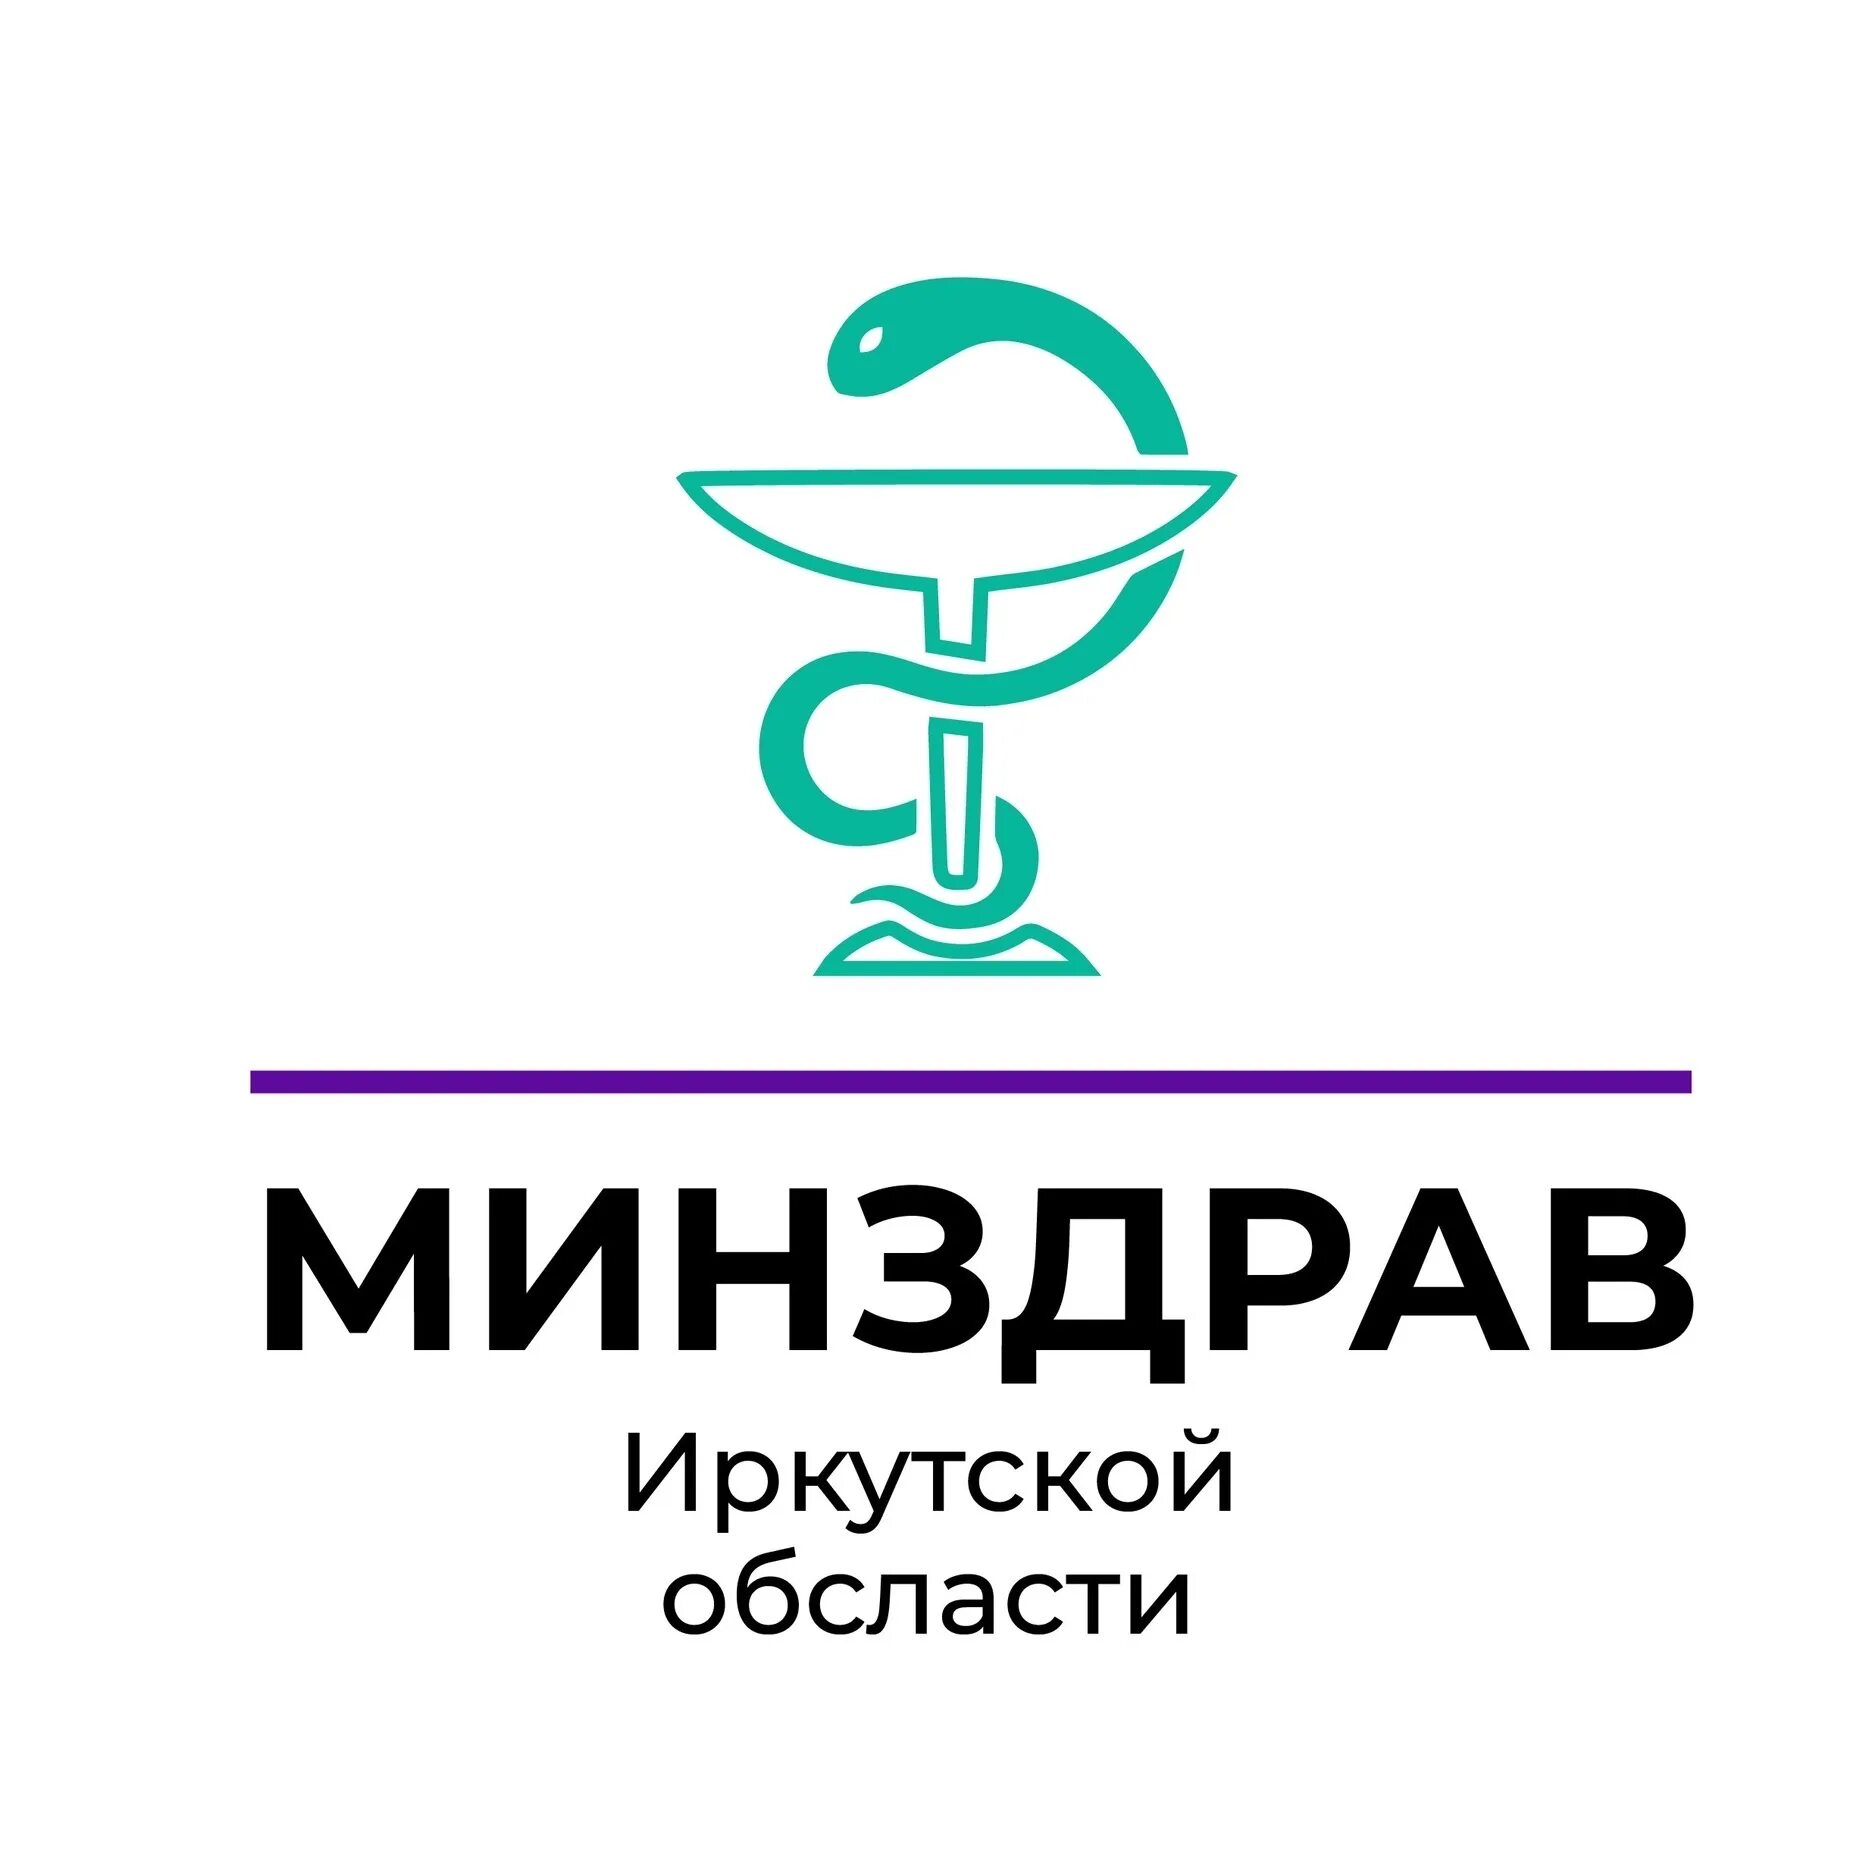 Телефон иркутского министерства здравоохранения. Министерство здравоохранения Иркутск. Минздрав Иркутской области лого.